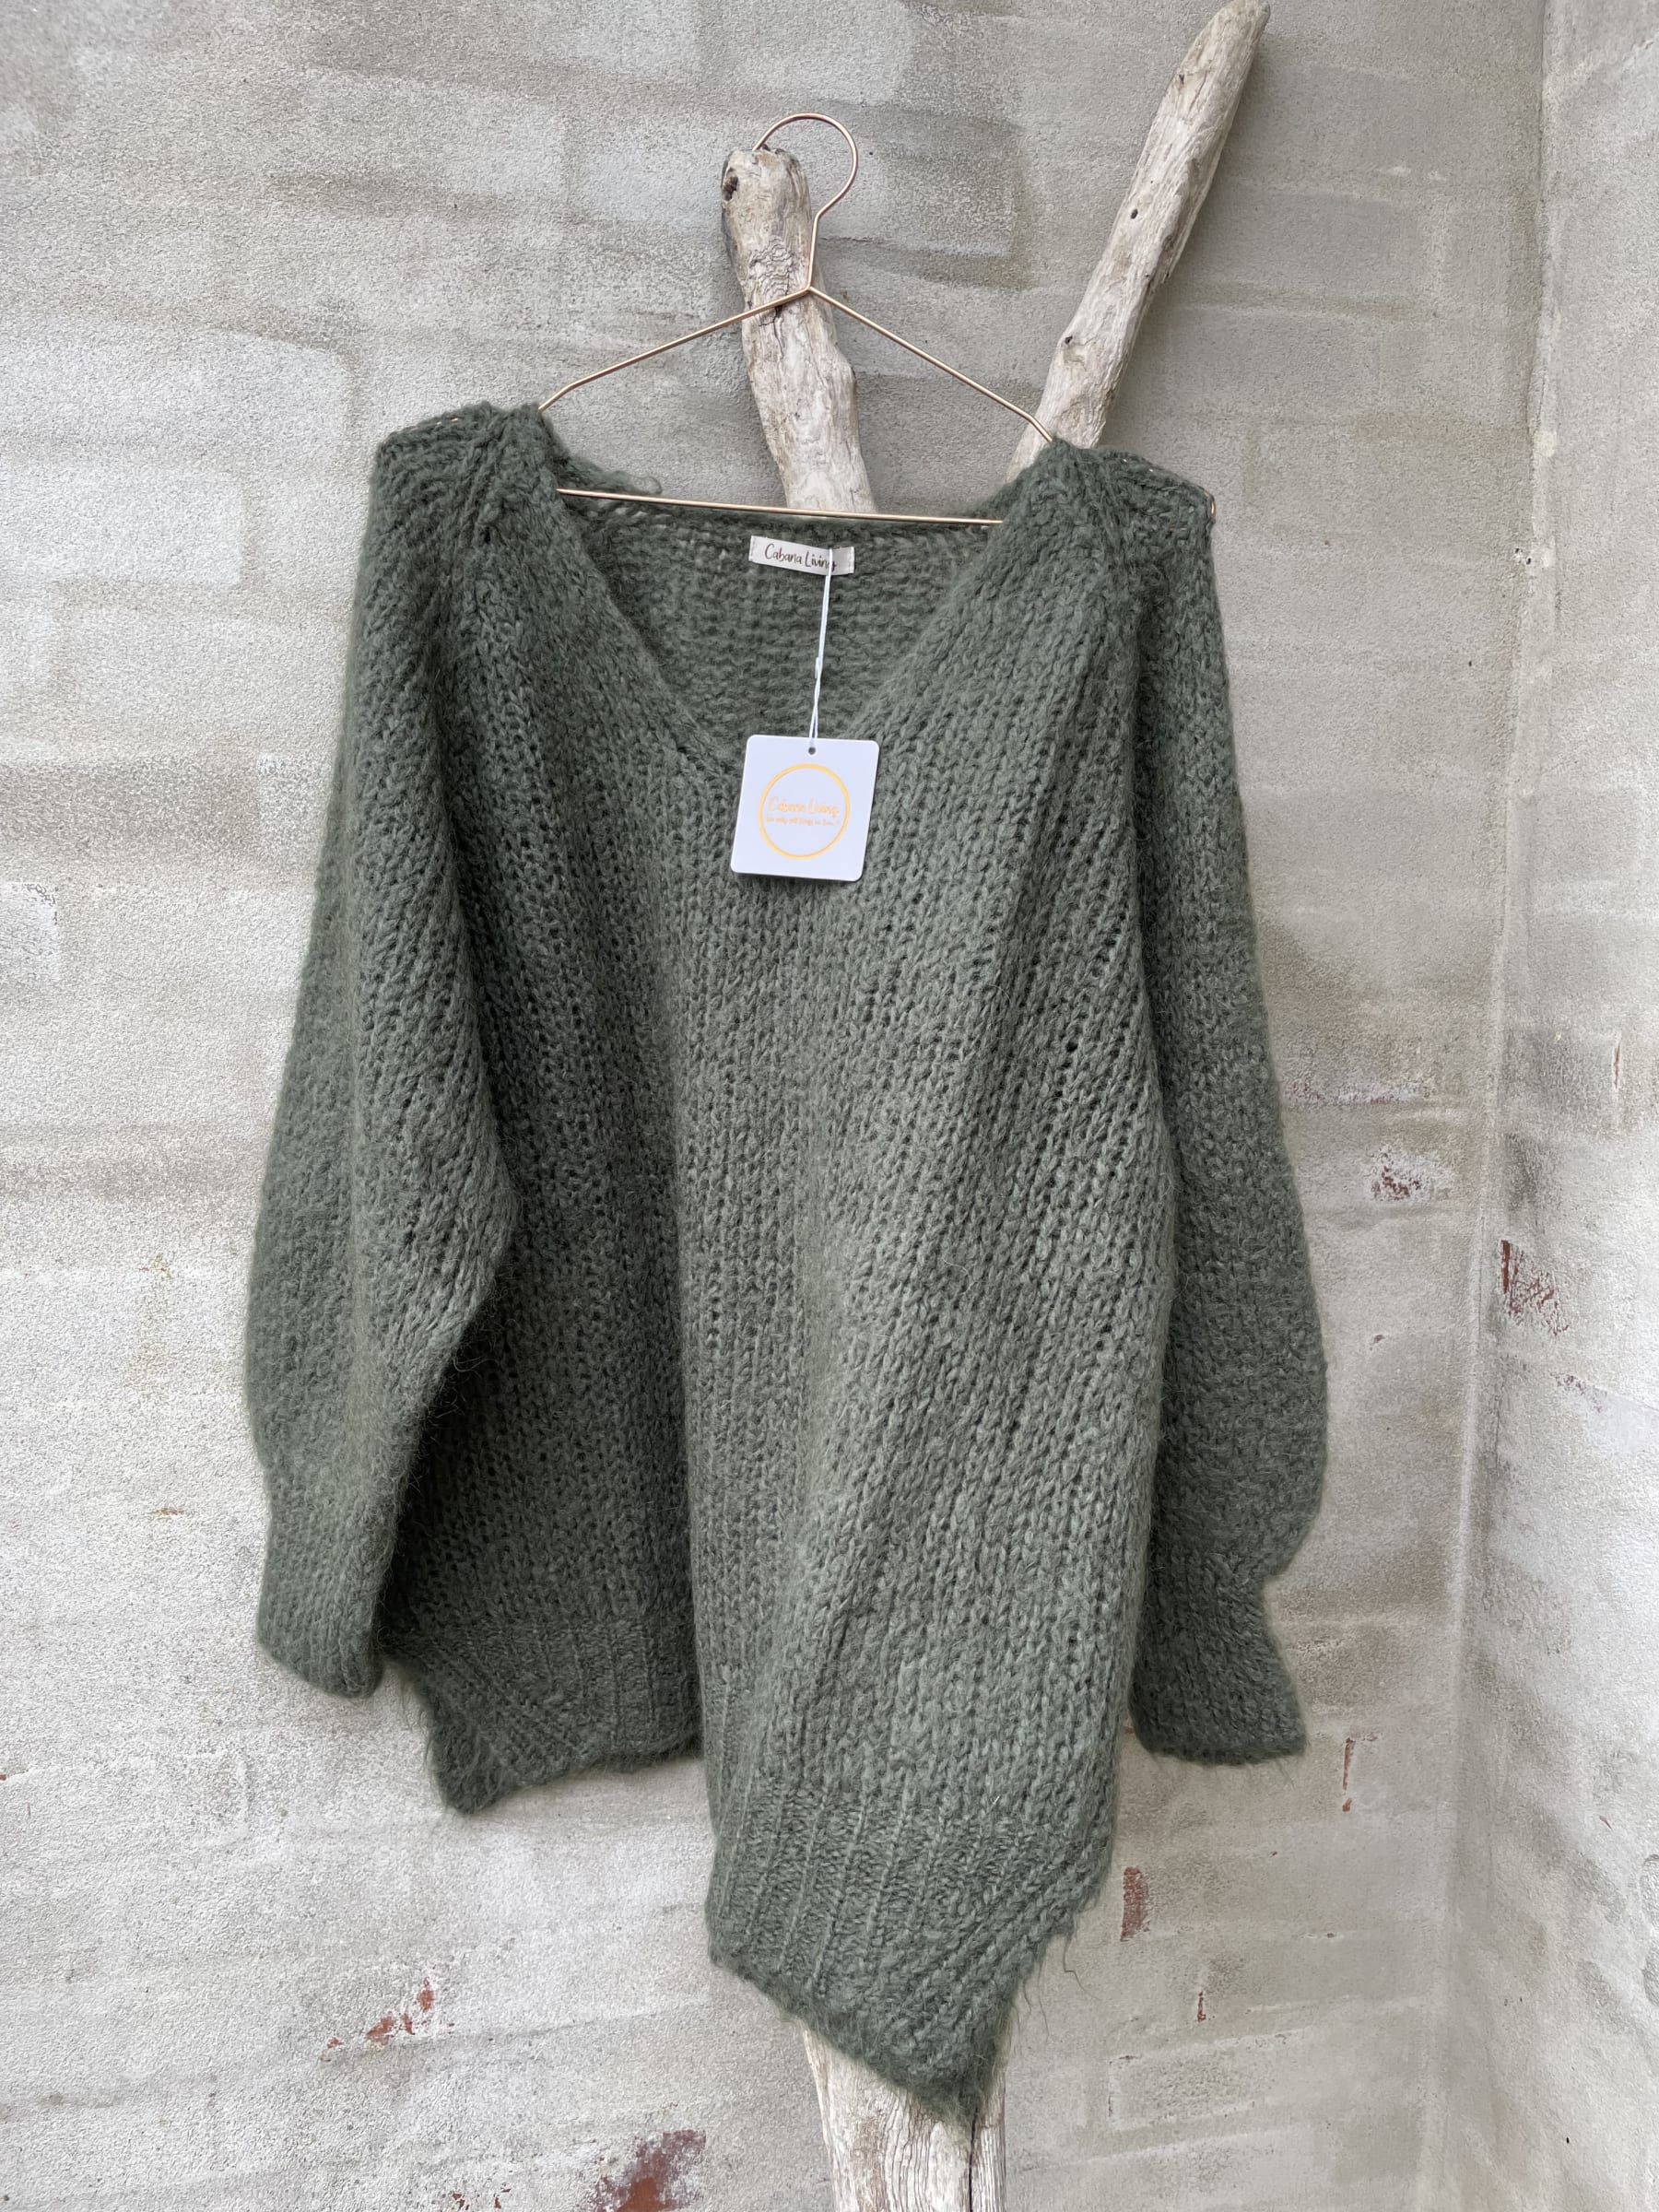 Rubin sort Luscious Cl iv af-1019 sweater militara | KØB HER